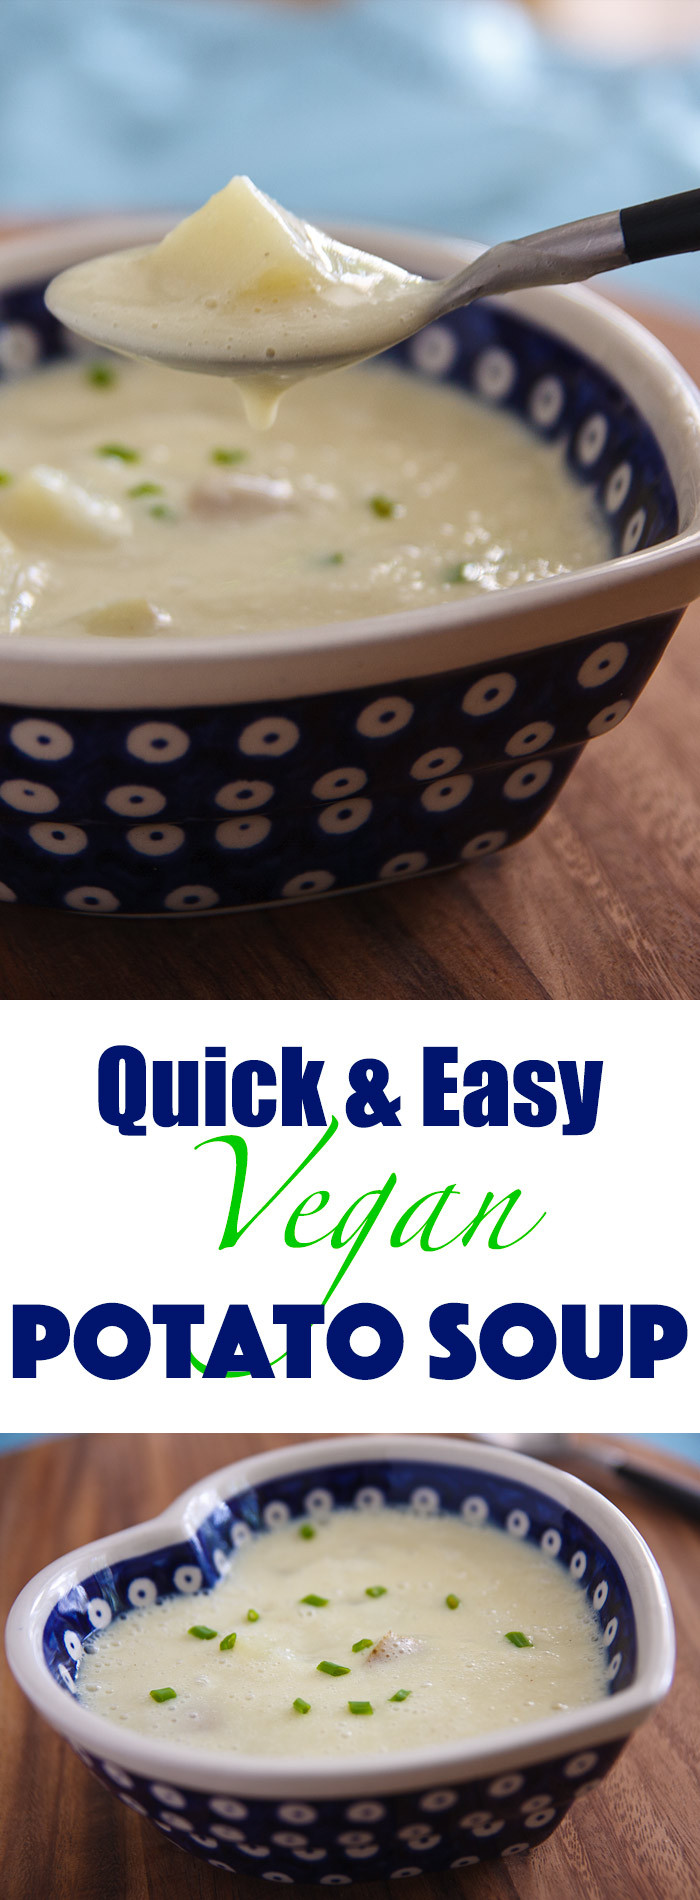 Potato Soup Recipe Vegetarian
 Quick and Easy Potato Soup